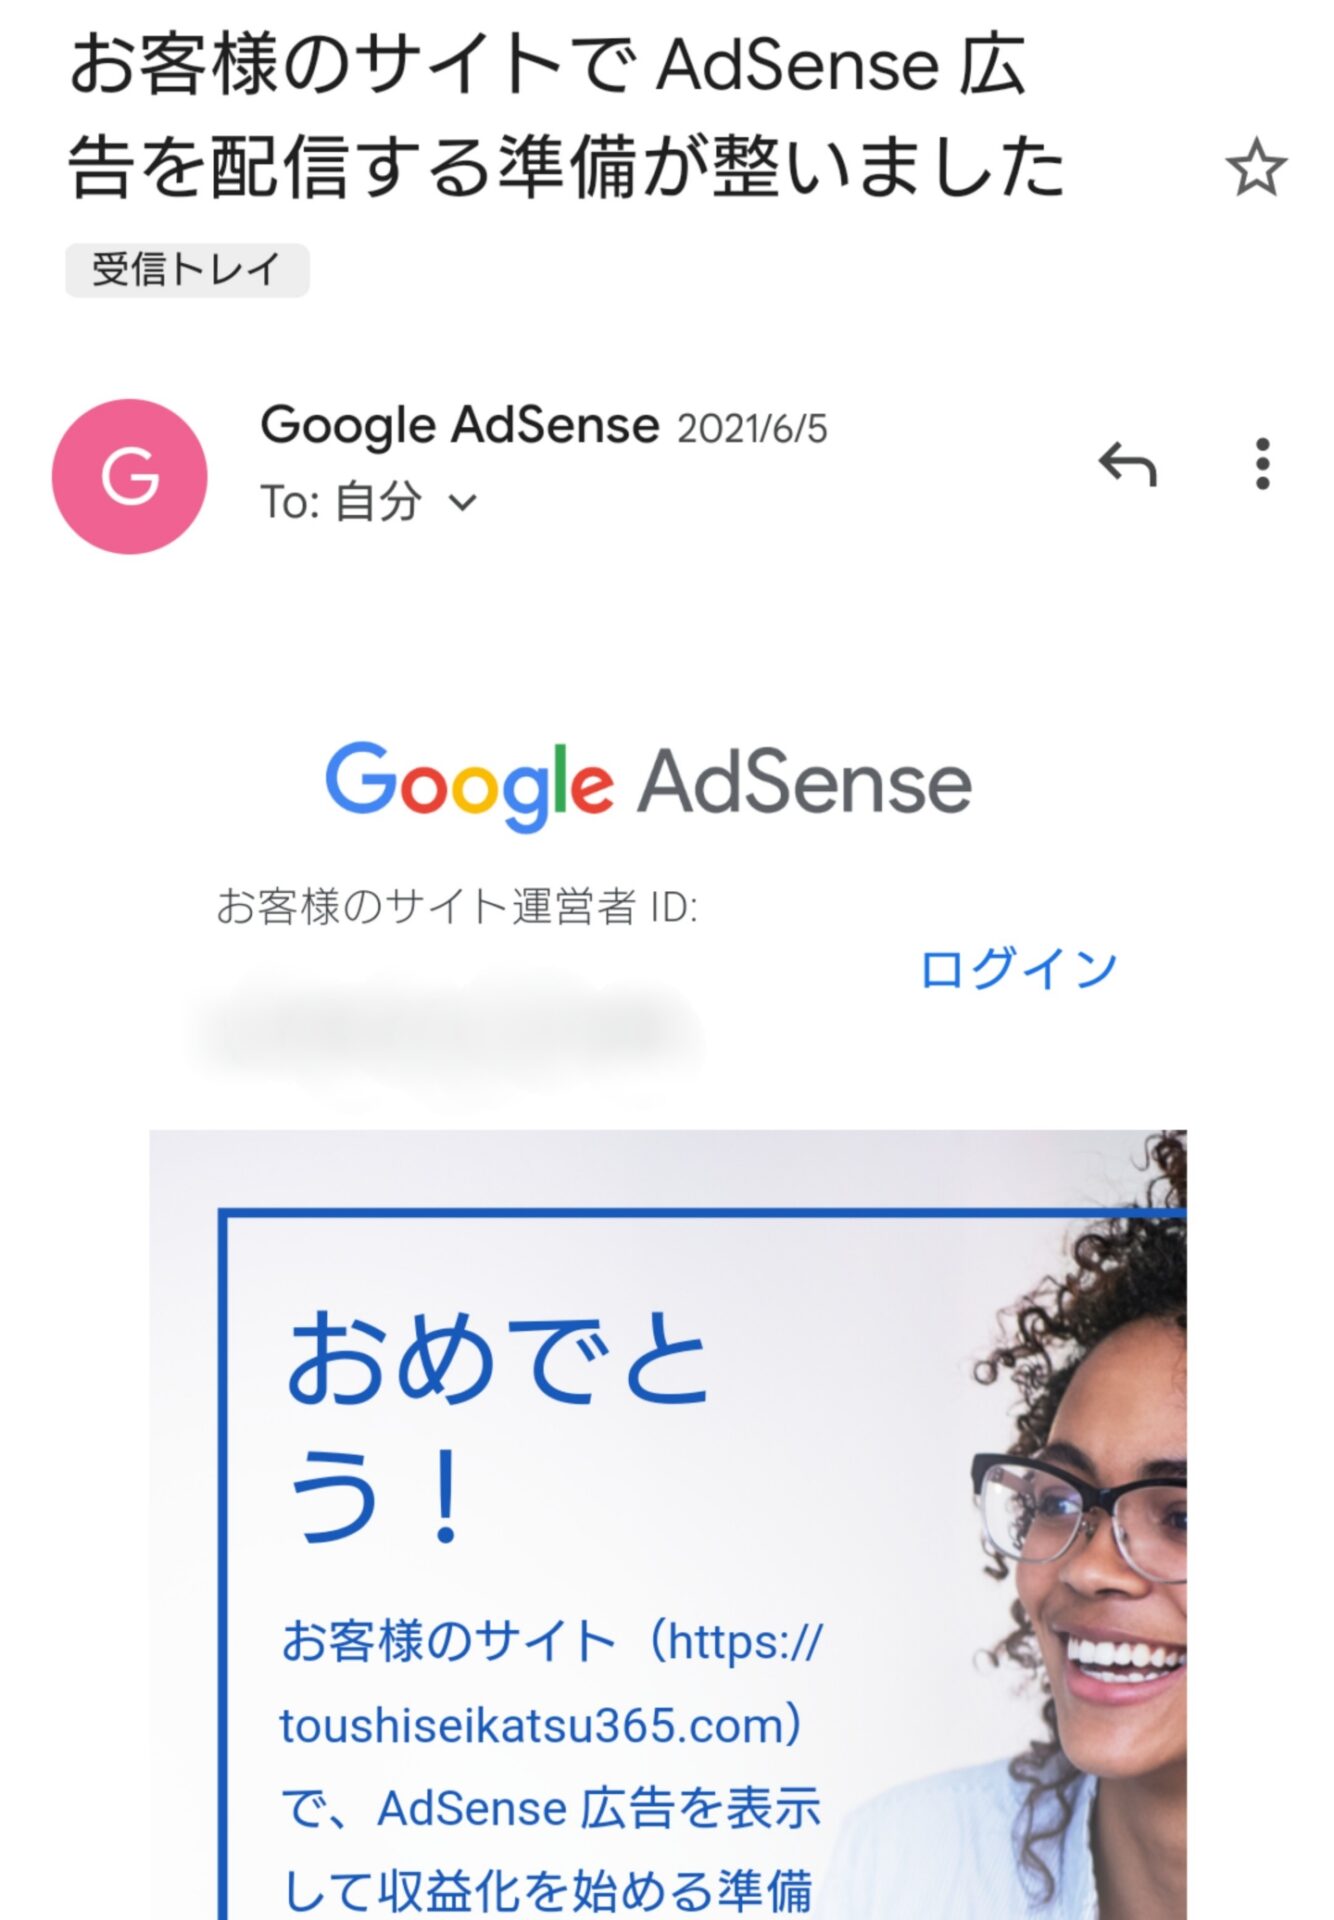 2021年6月5日 Google Adsense審査合格